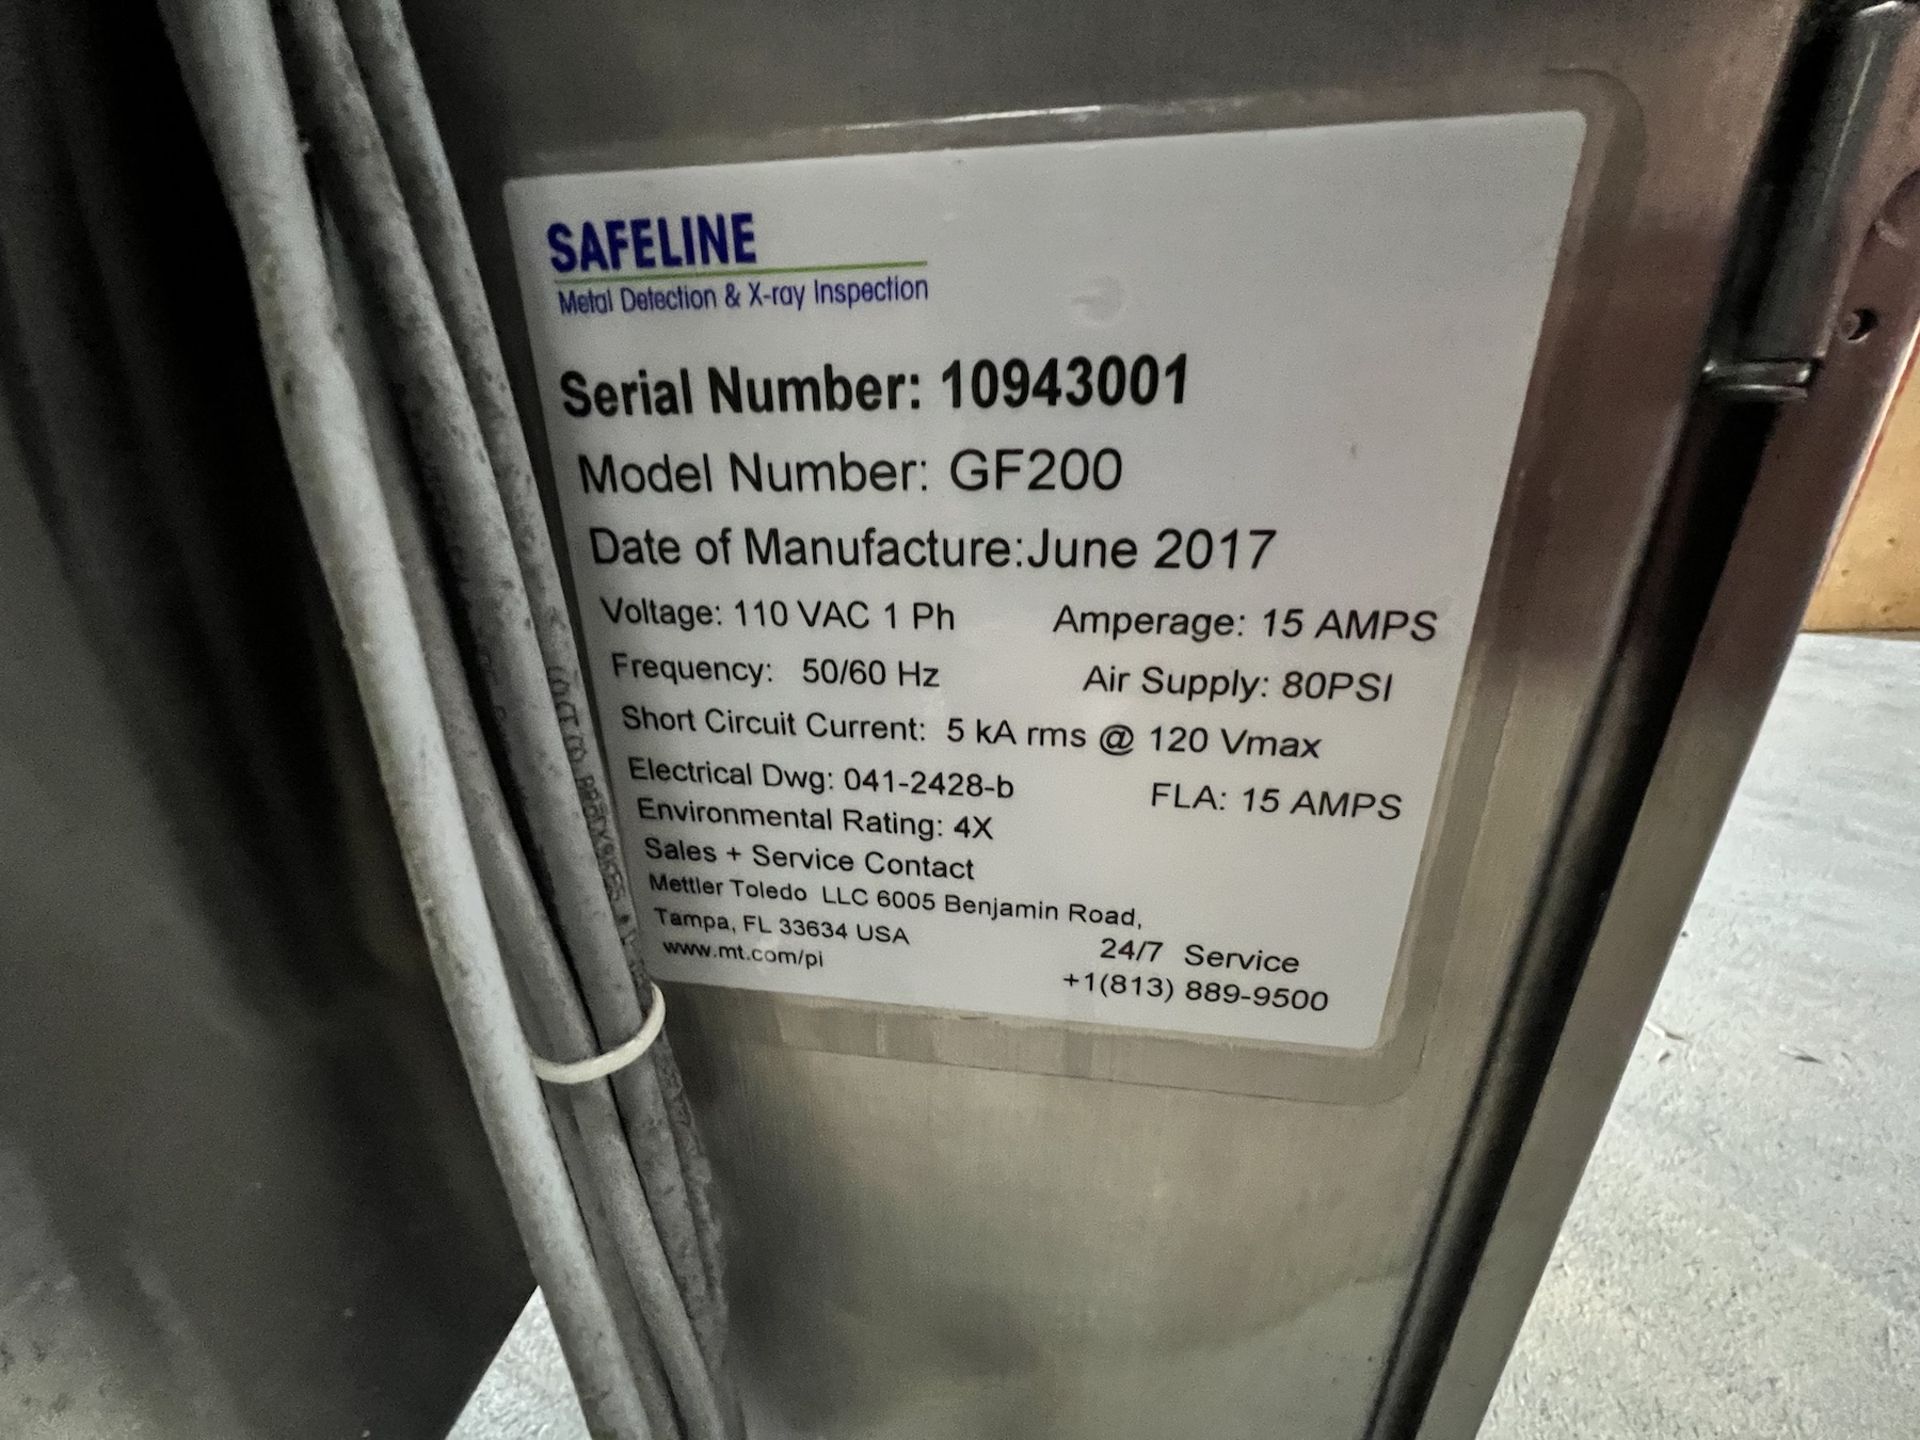 2017 SAFELINE FLOW-THROUGH METAL DETECTOR, MODEL GF200, S/N 10943001, 110 VAC, 1 PHASE - Image 3 of 8